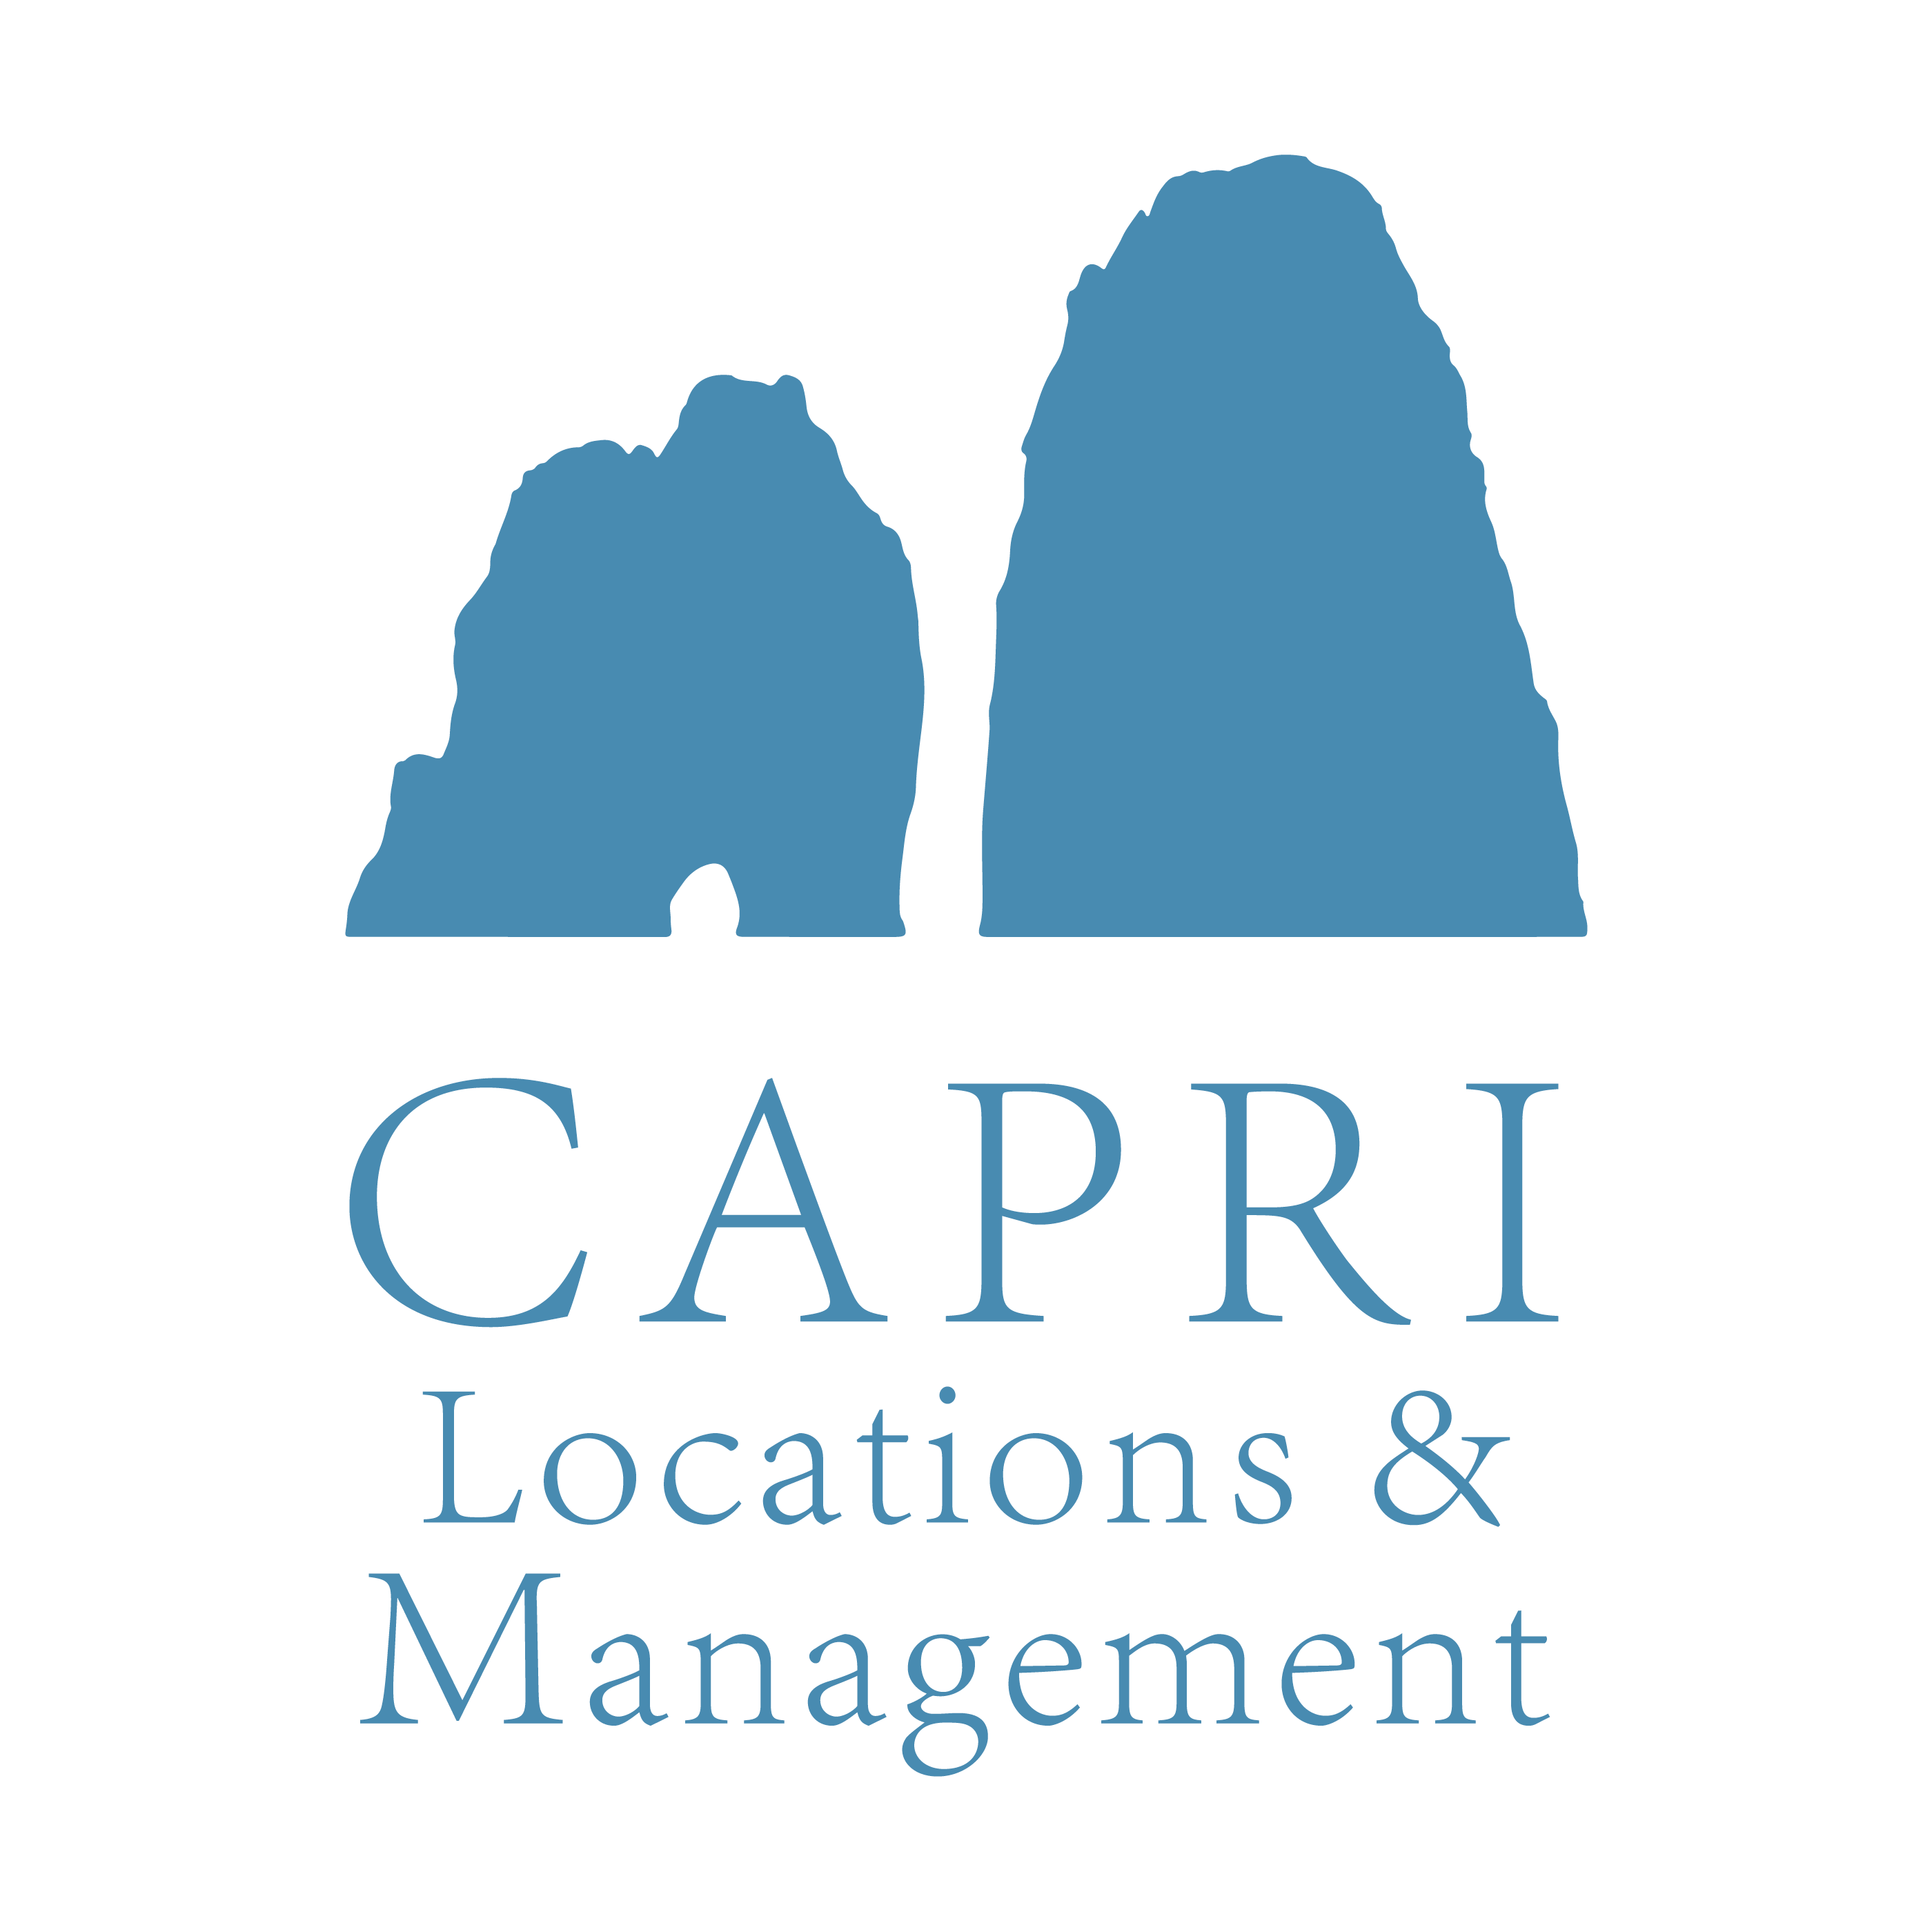 Capri Locations